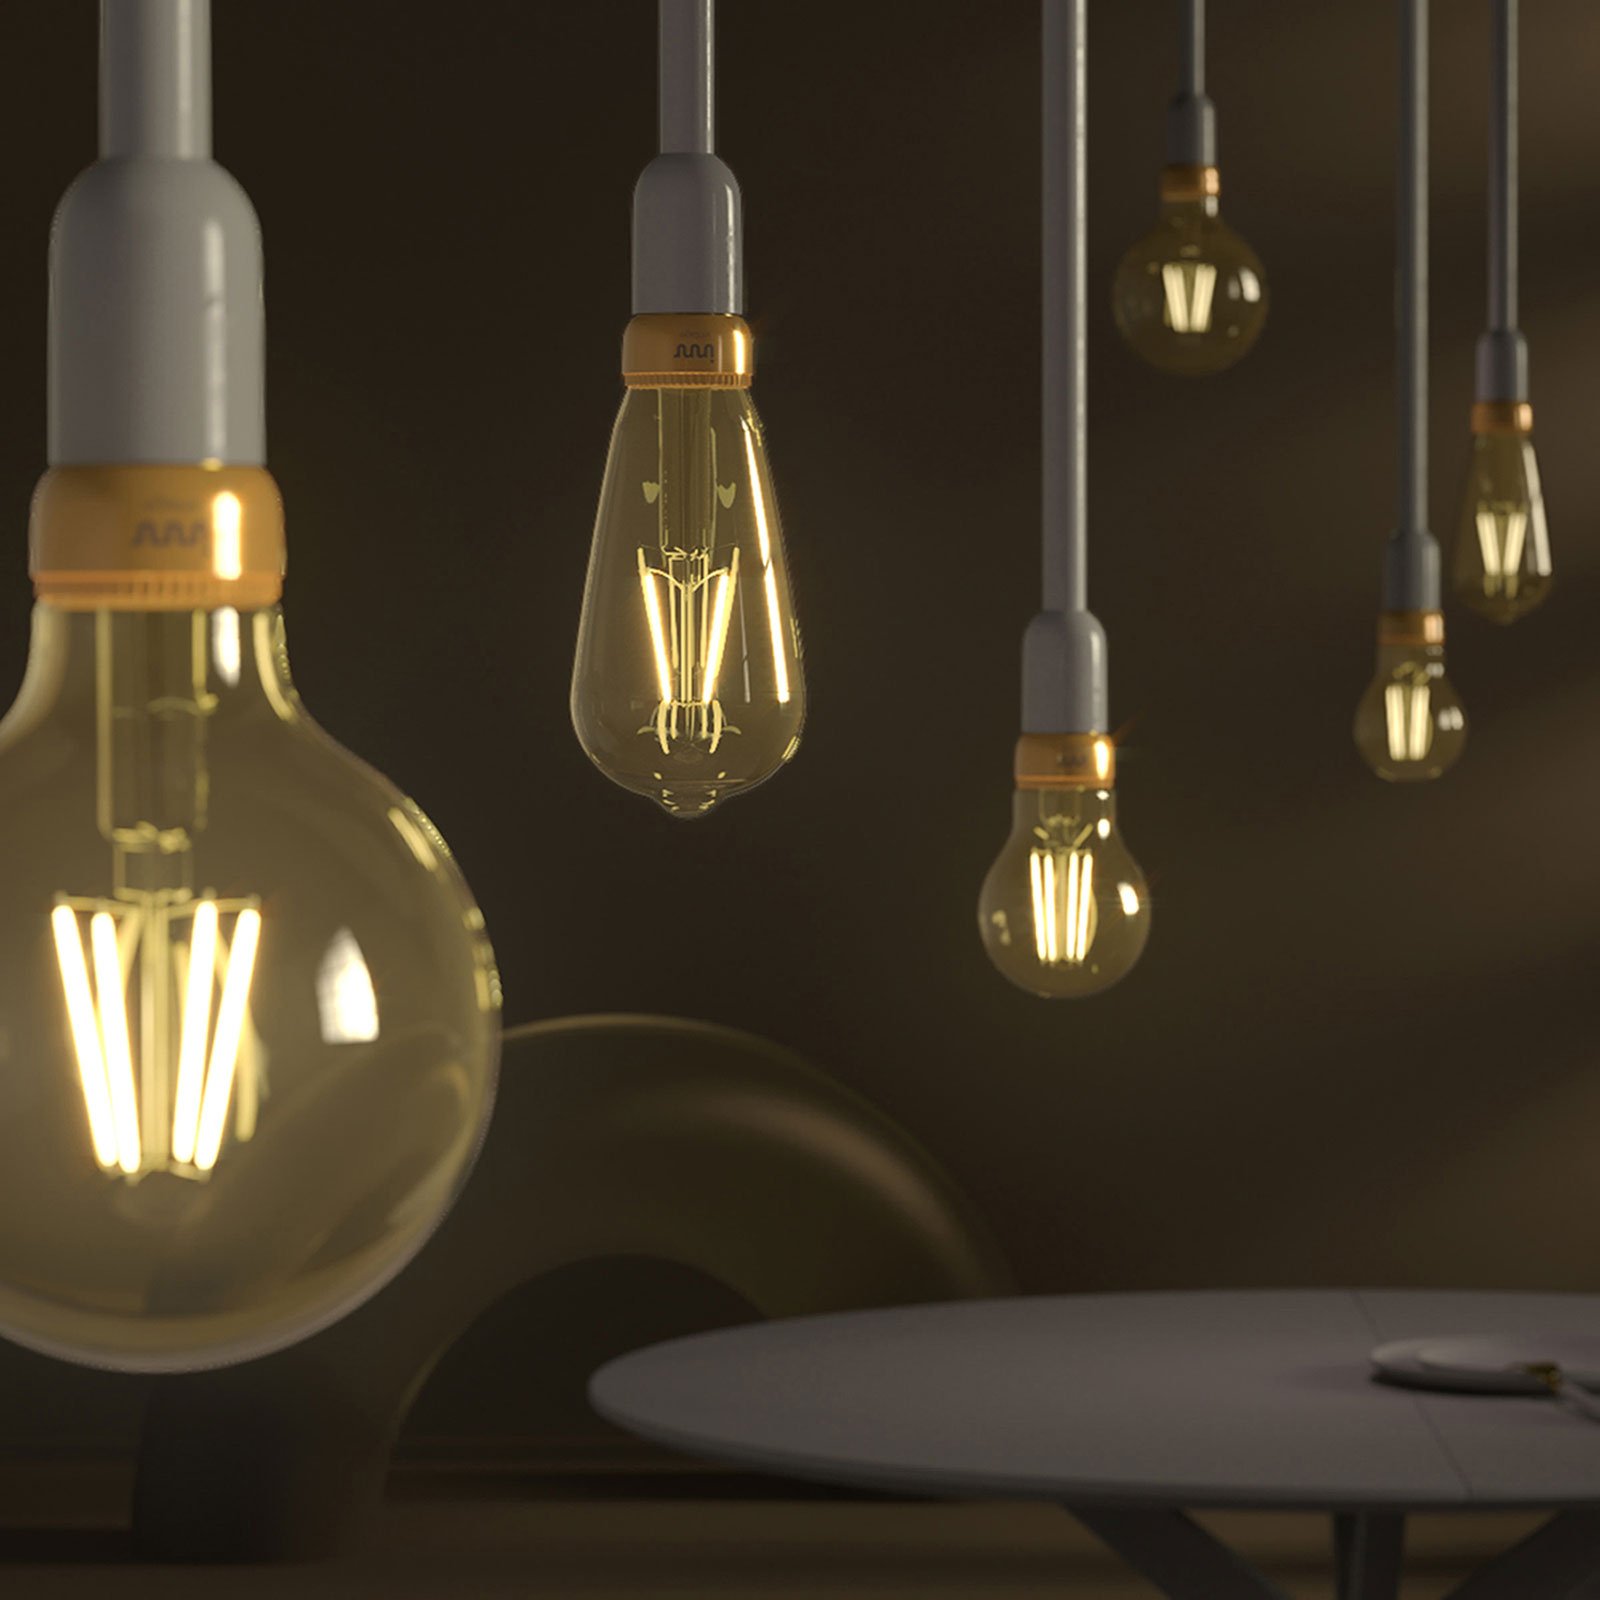 Innr LED-Lampe E27 Filament Edison 2.200K 4,2W 2er